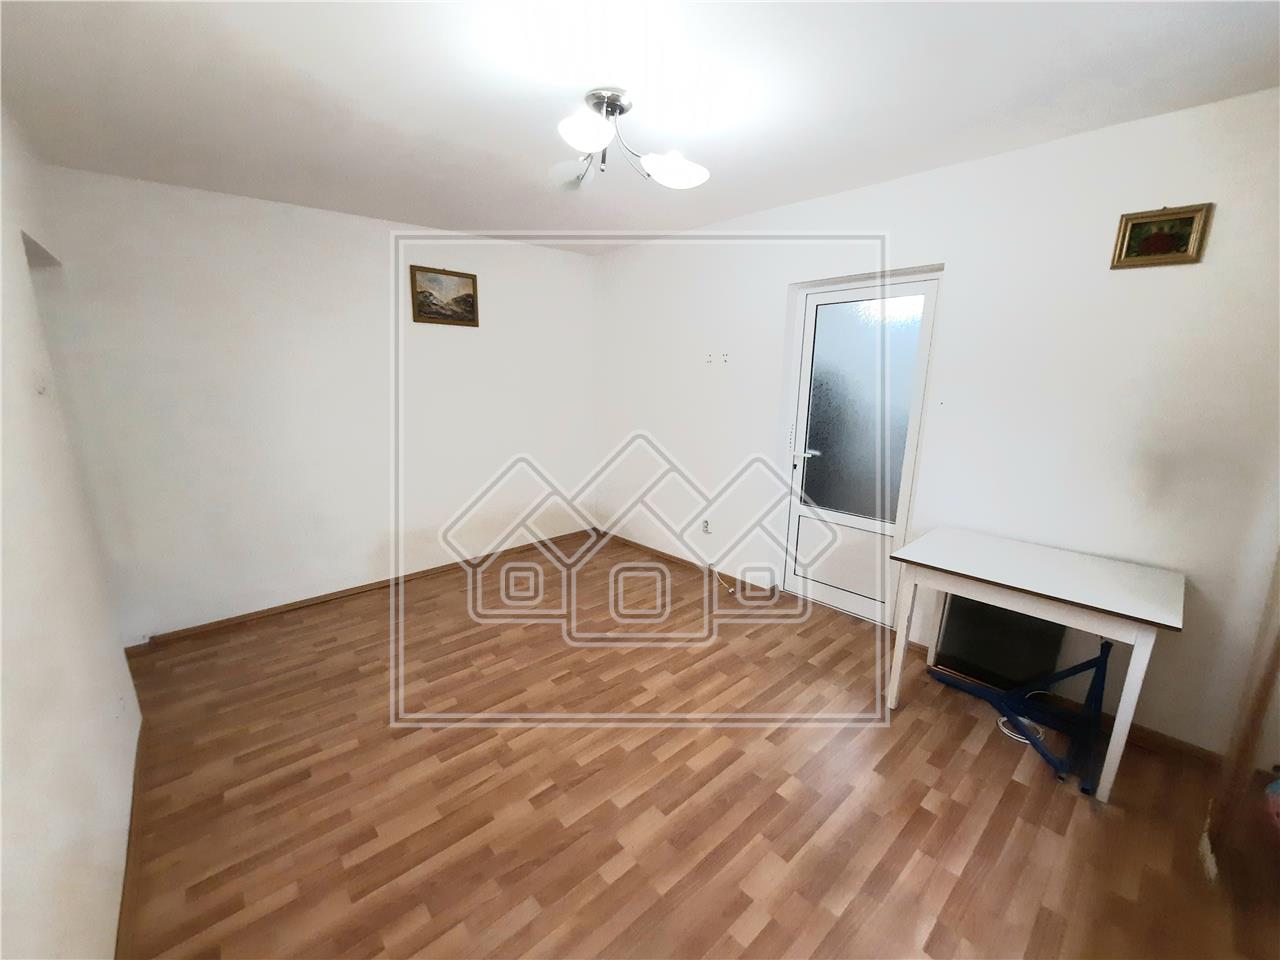 Apartment for rent in Alba Iulia - 37 sqm - 2 rooms - Cetate area